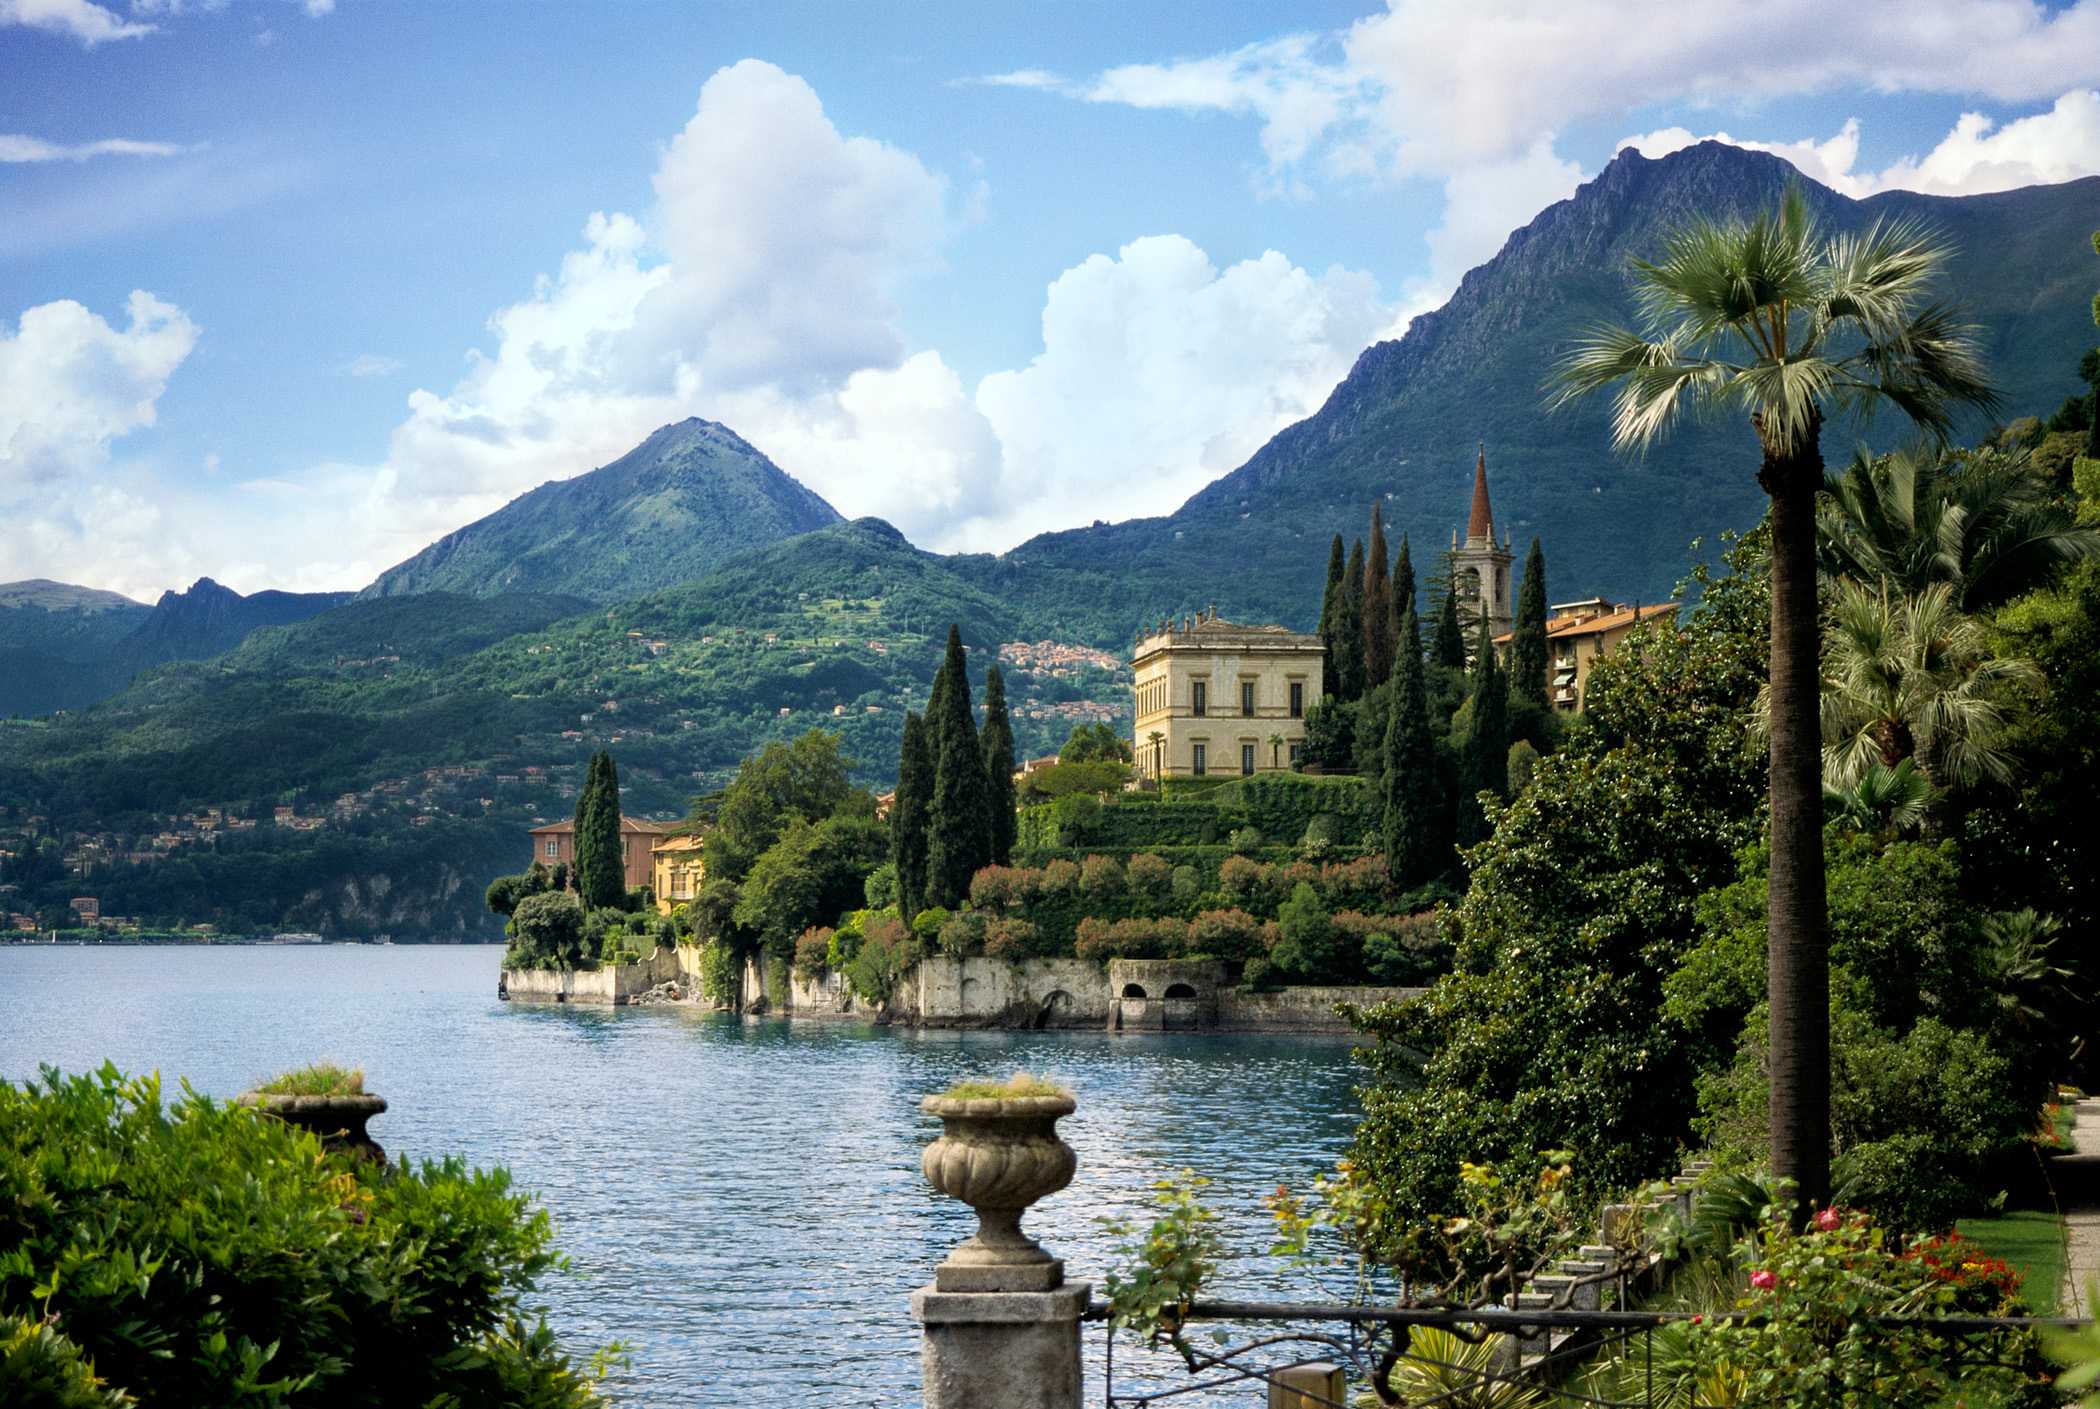 Озеро комо в италии фото